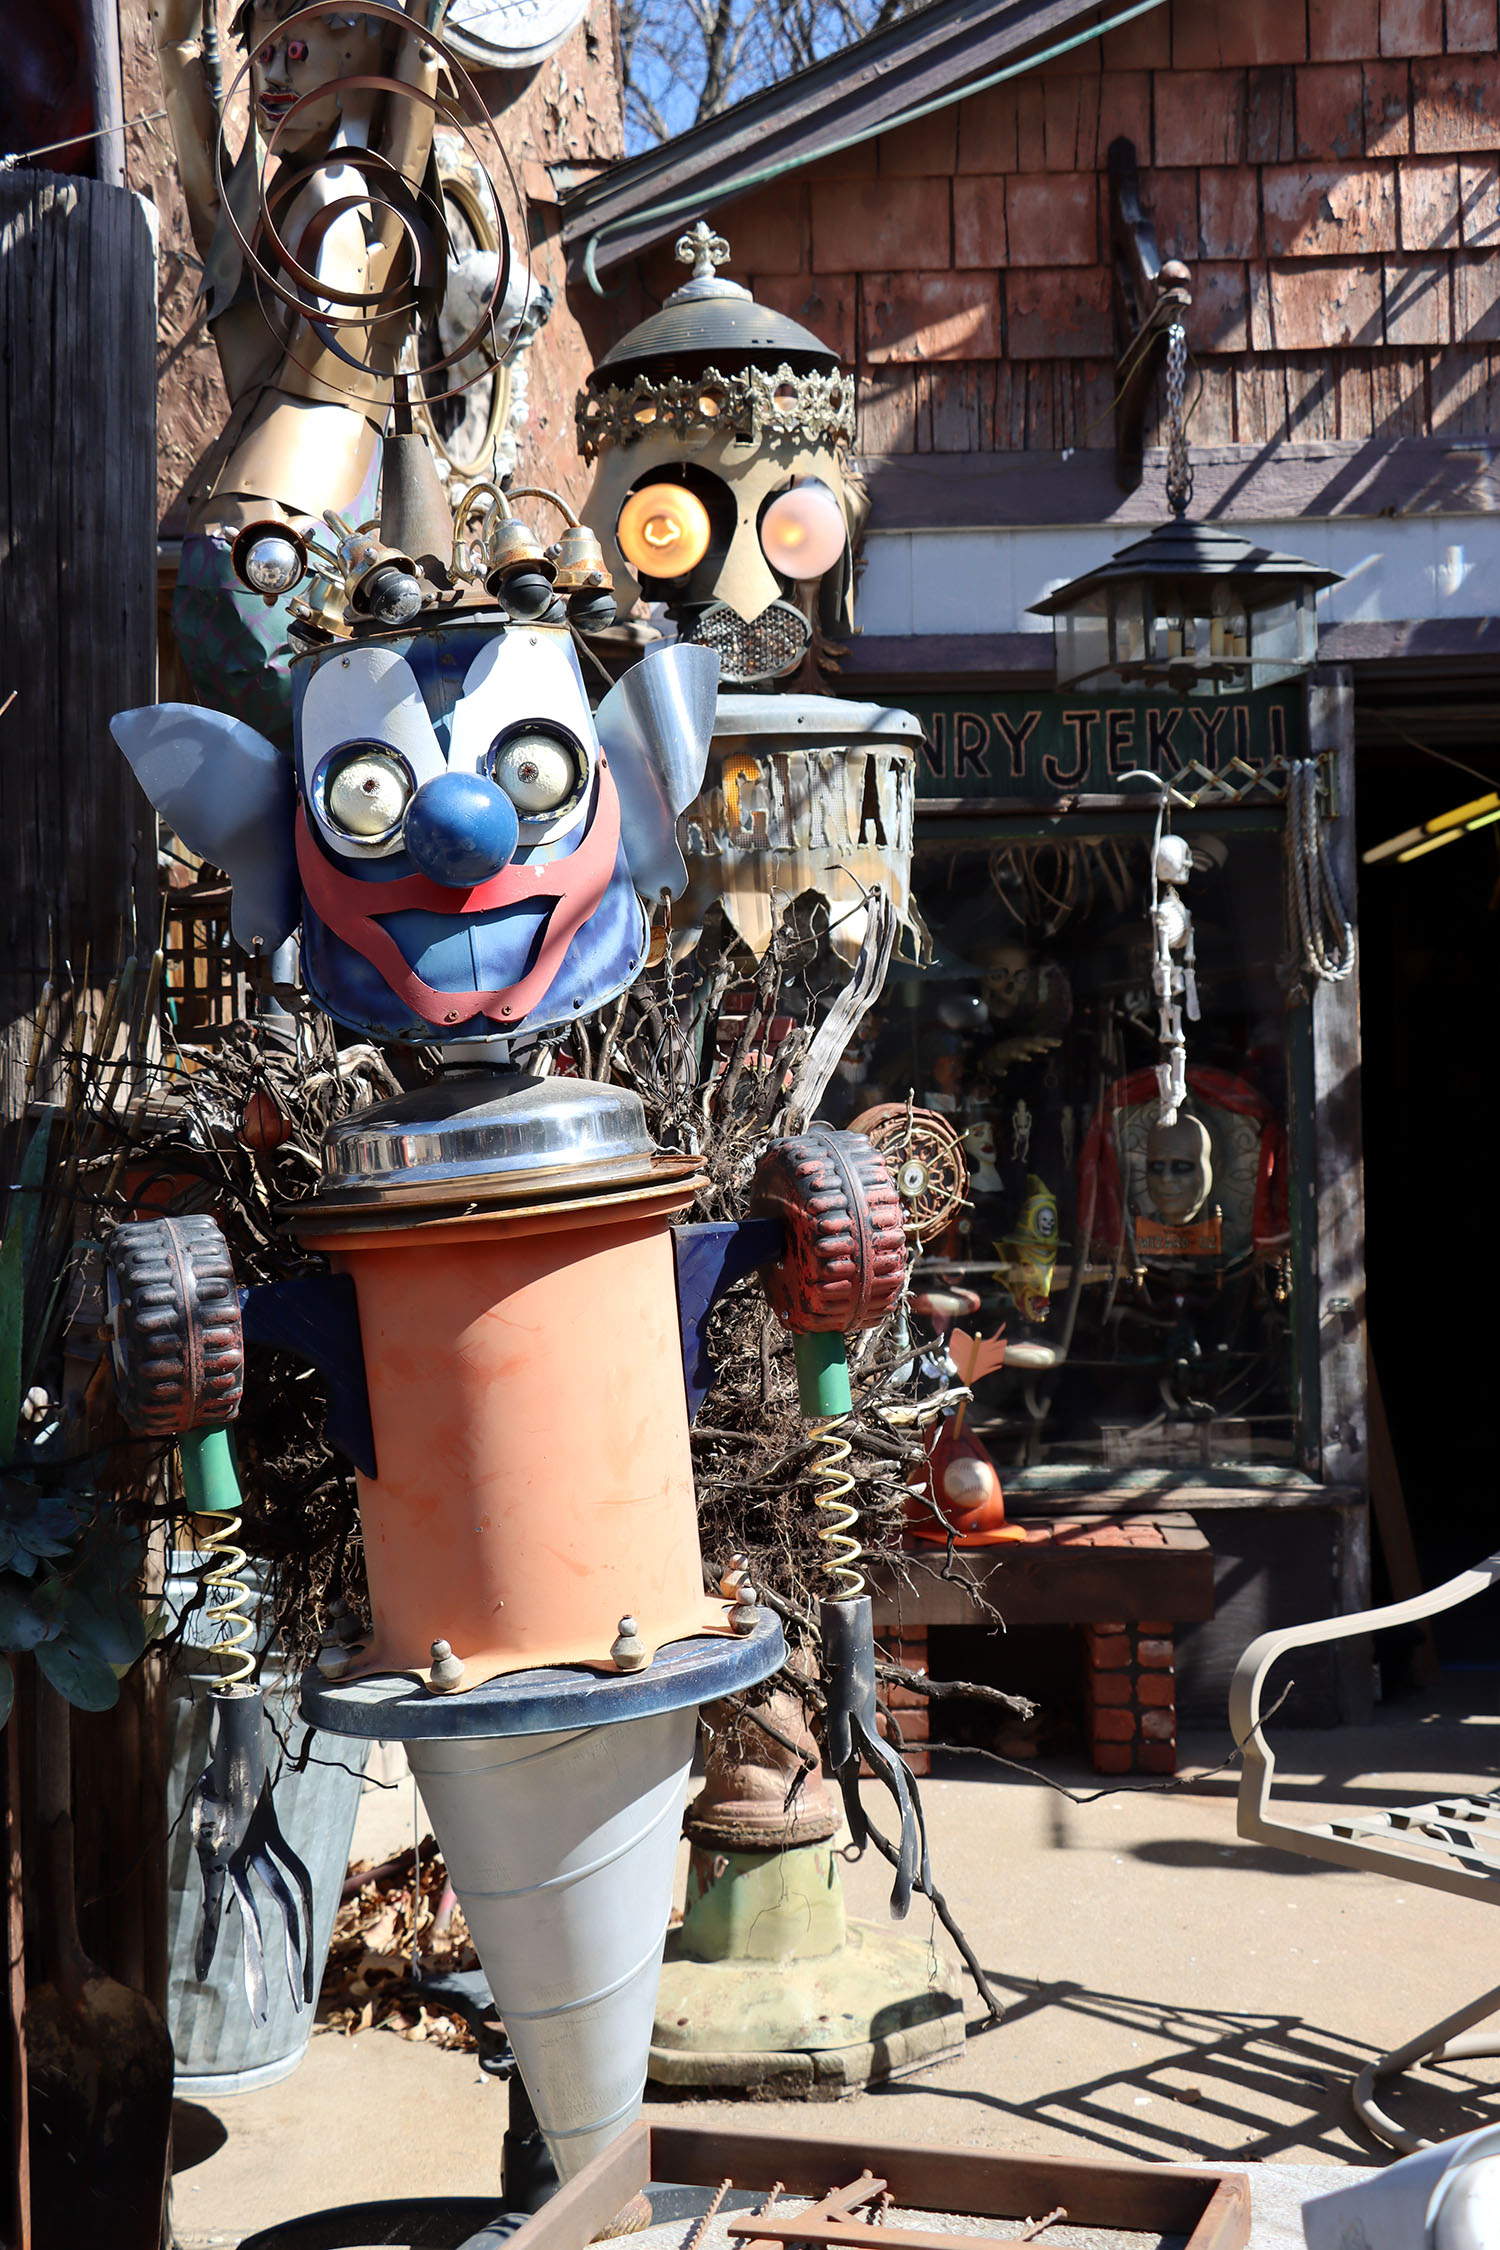 Sculpture of a clown made of metal at Gary Pendergrass' steampunk art installation in Wichita, Kansas